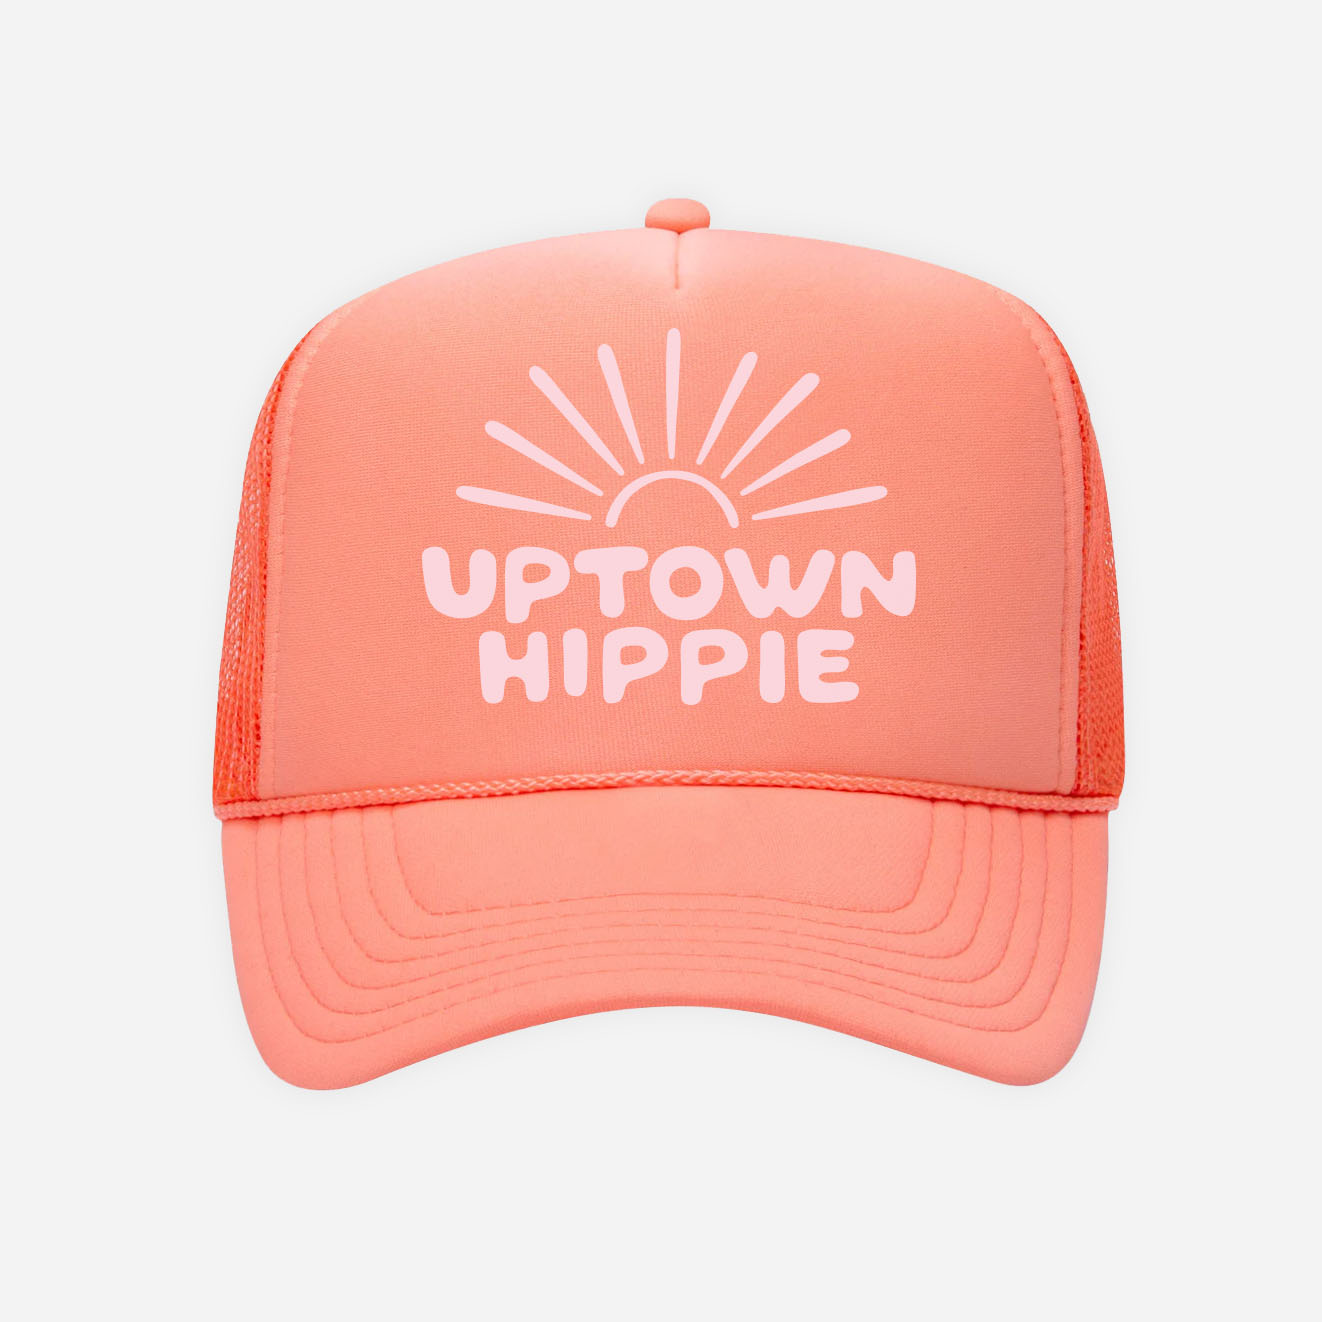 Uptown Hippie Sunshine Trucker Hat